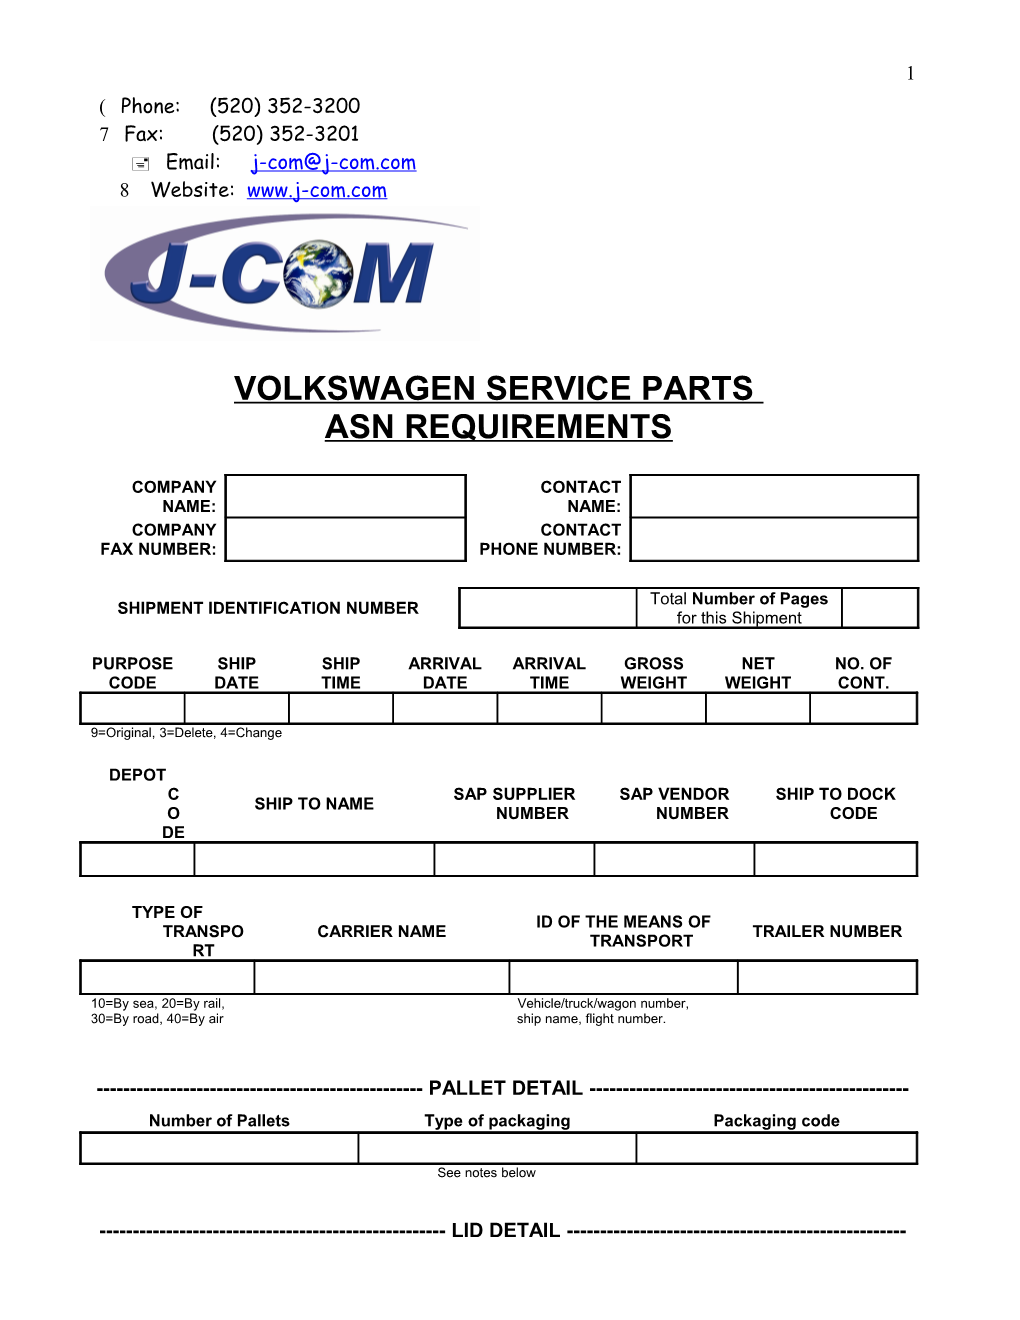 Volkswagen Service Parts